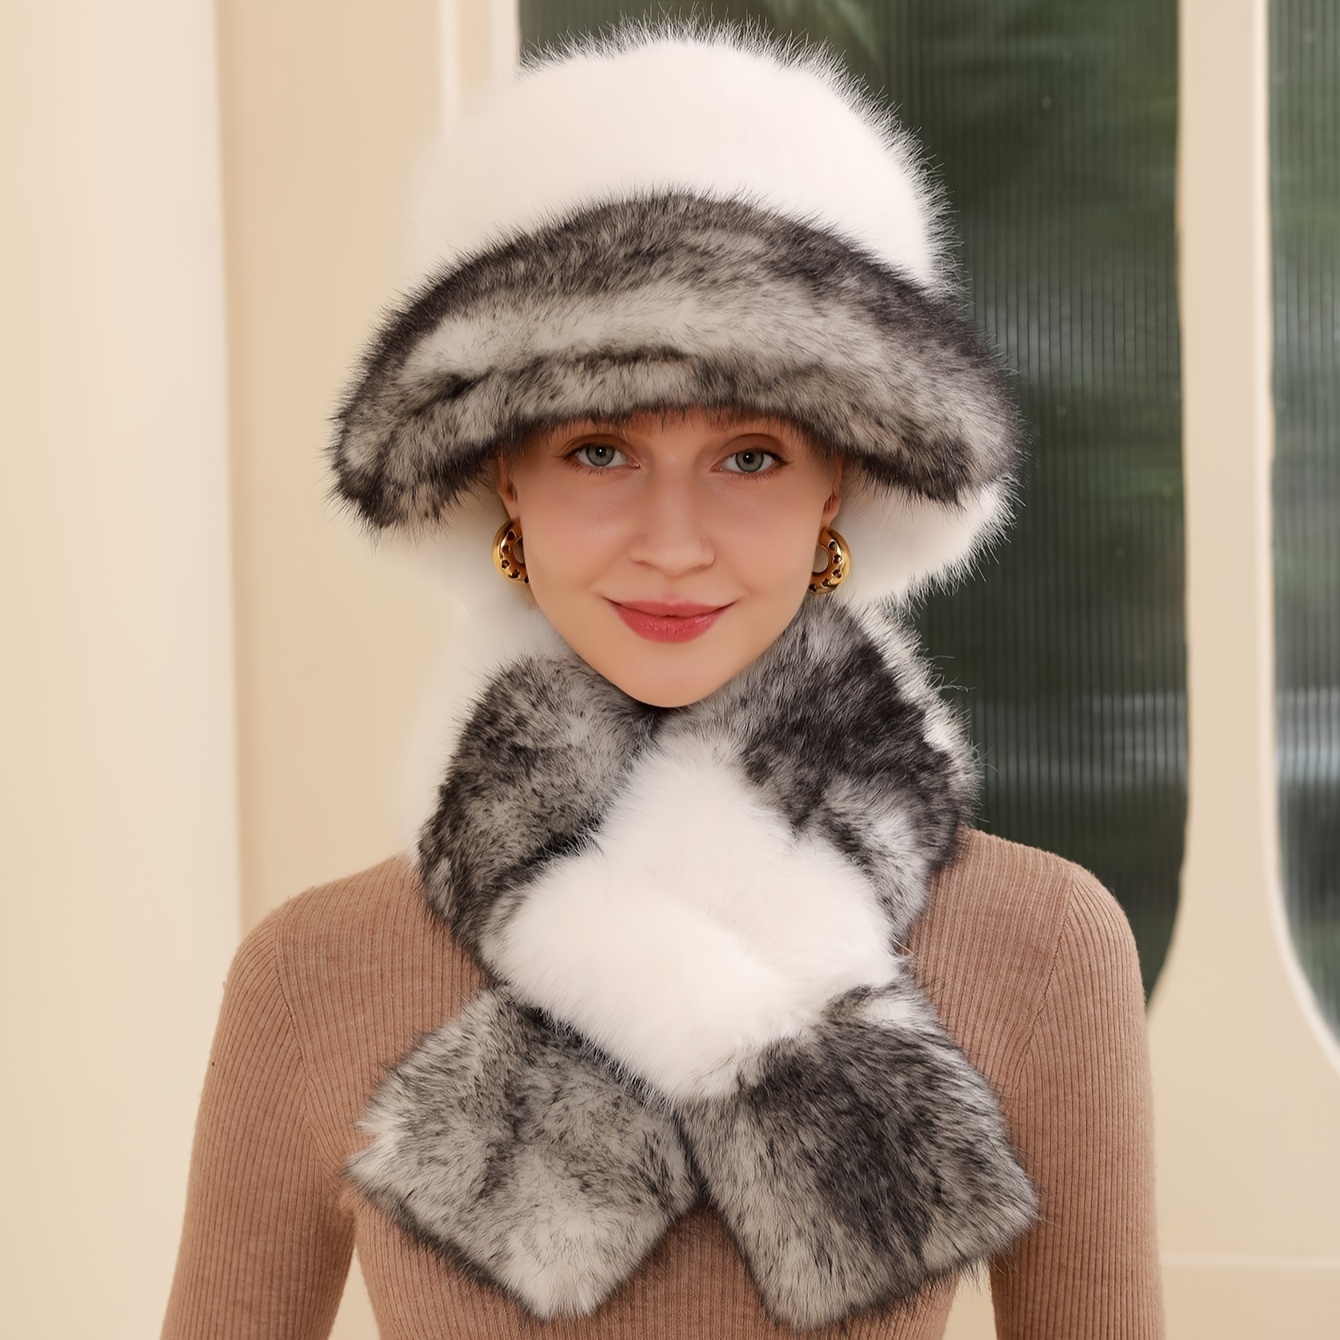 Acheter Chapeau écharpe costume hiver résistant au froid chaud